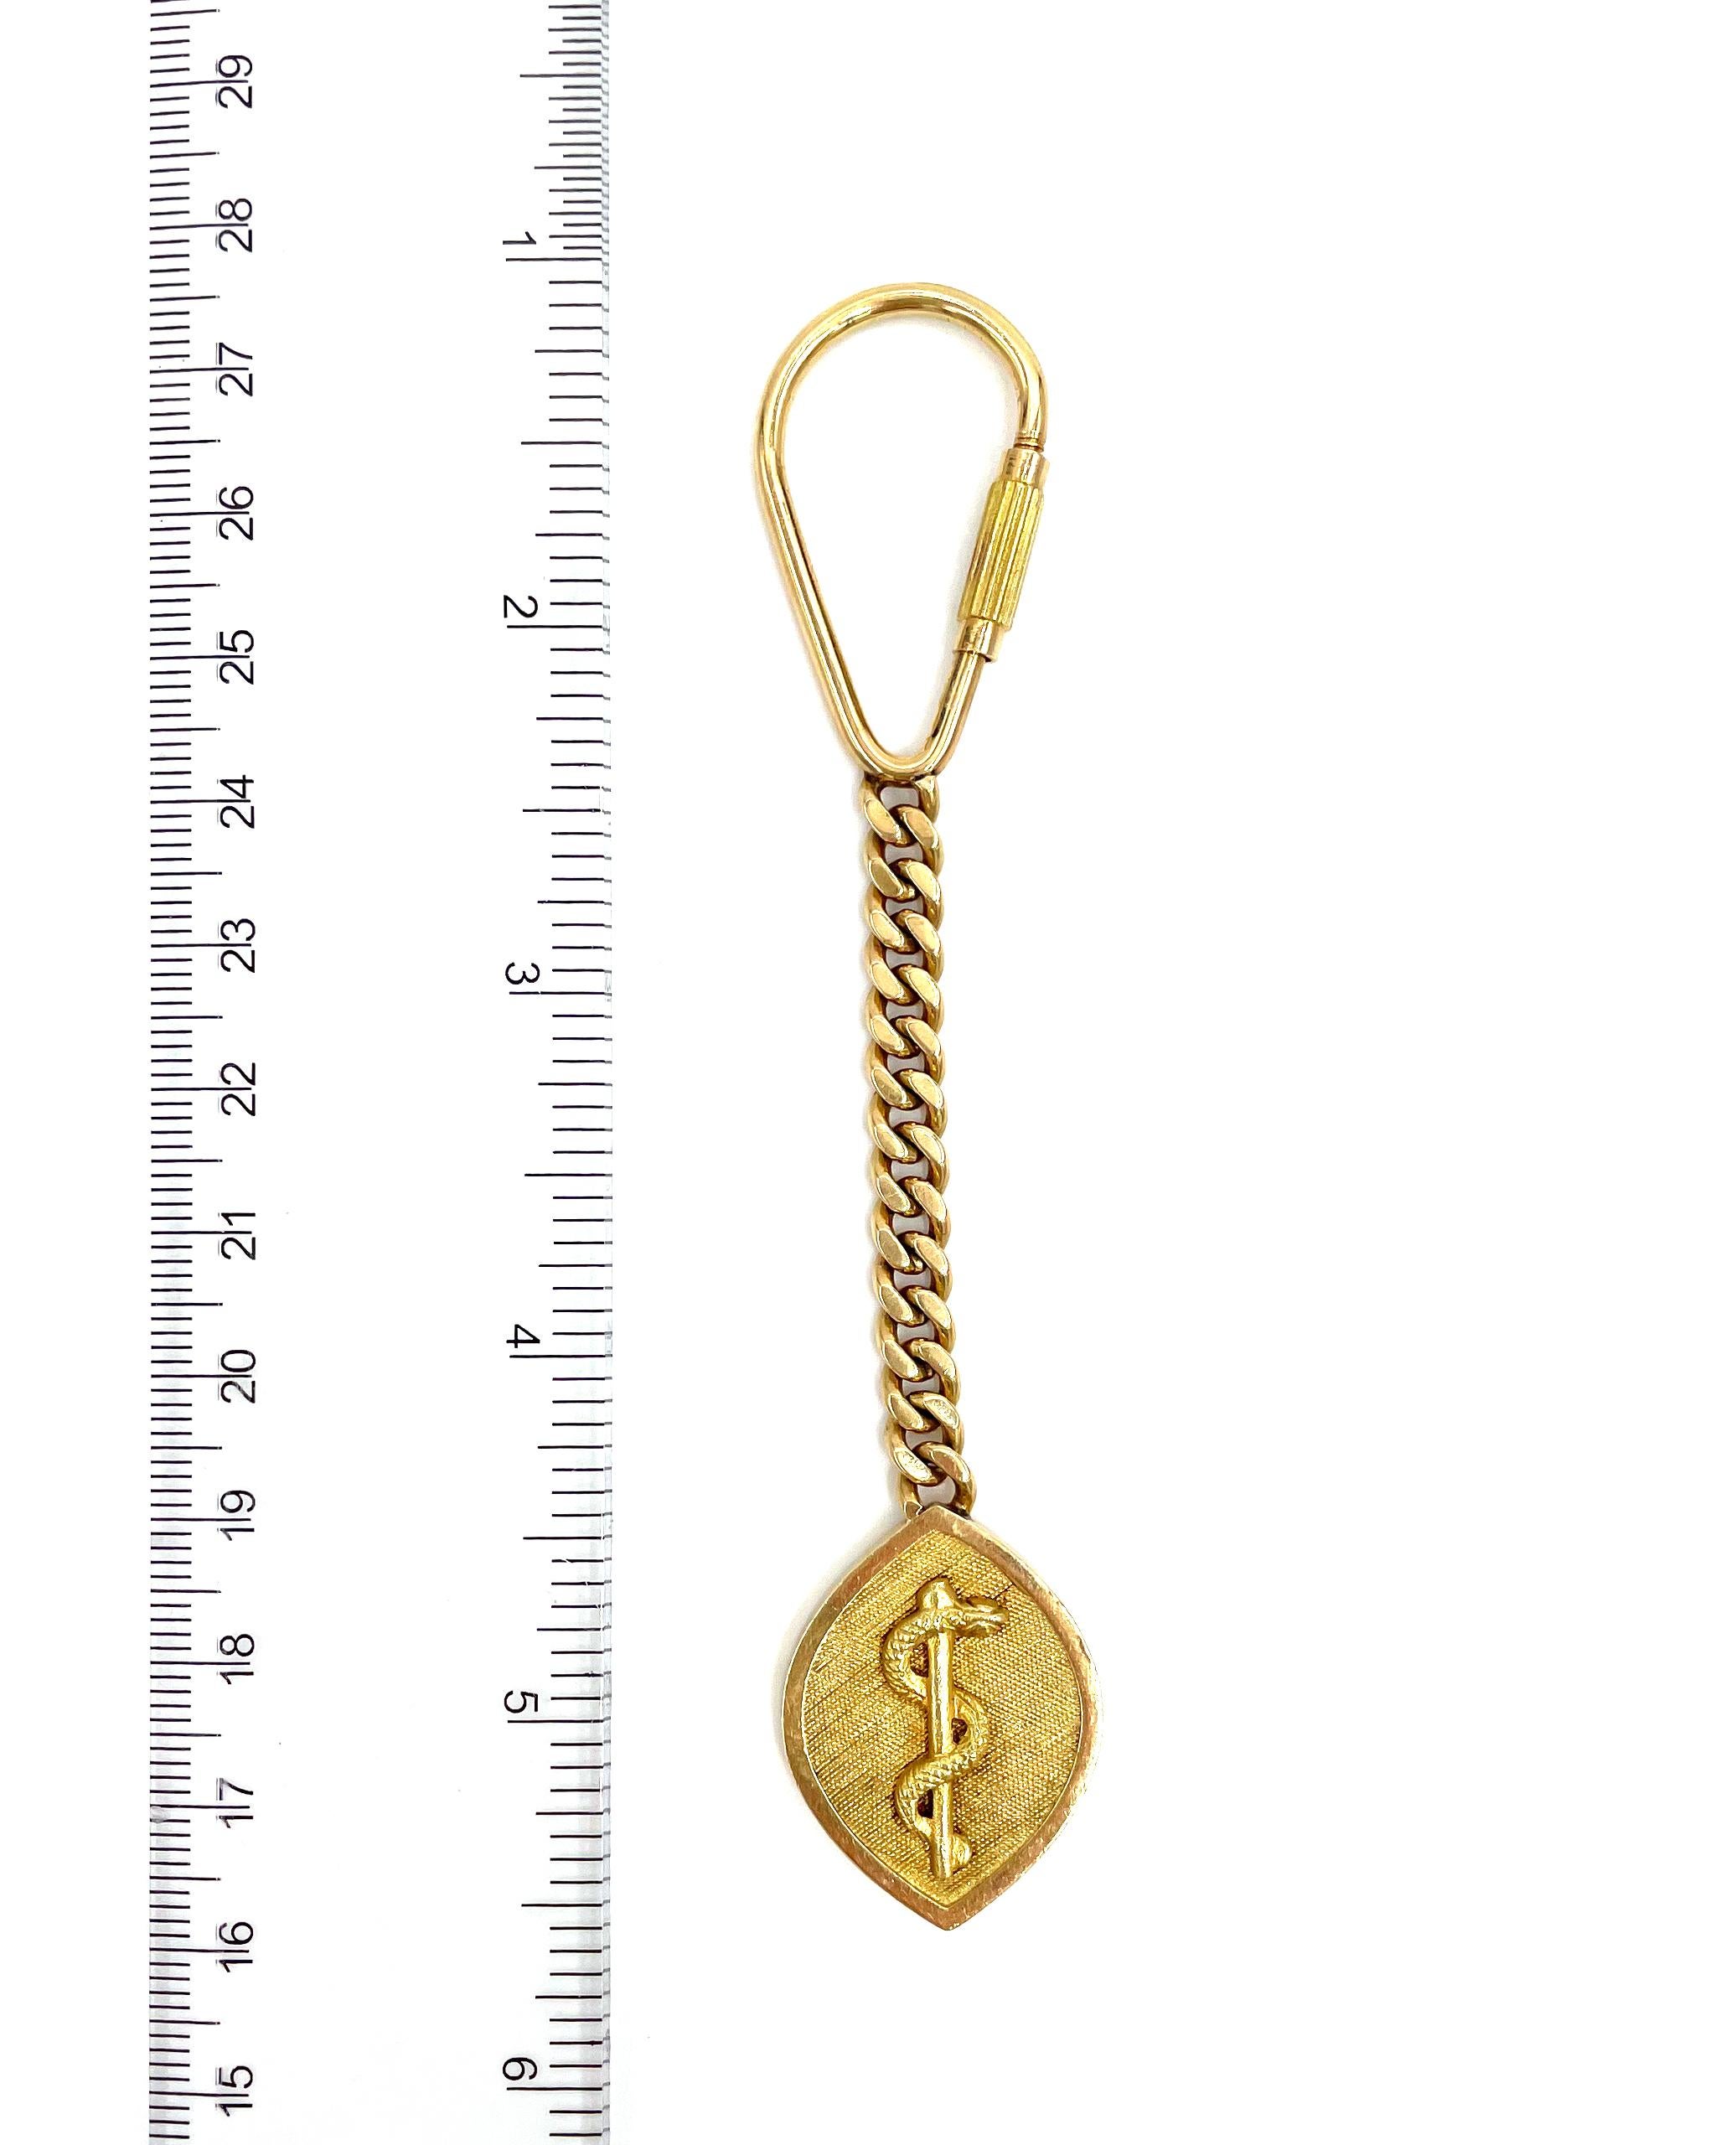 Porte-clés d'occasion en or jaune 14K avec le bâton d'Asclépios.

* Poids : 20 grammes